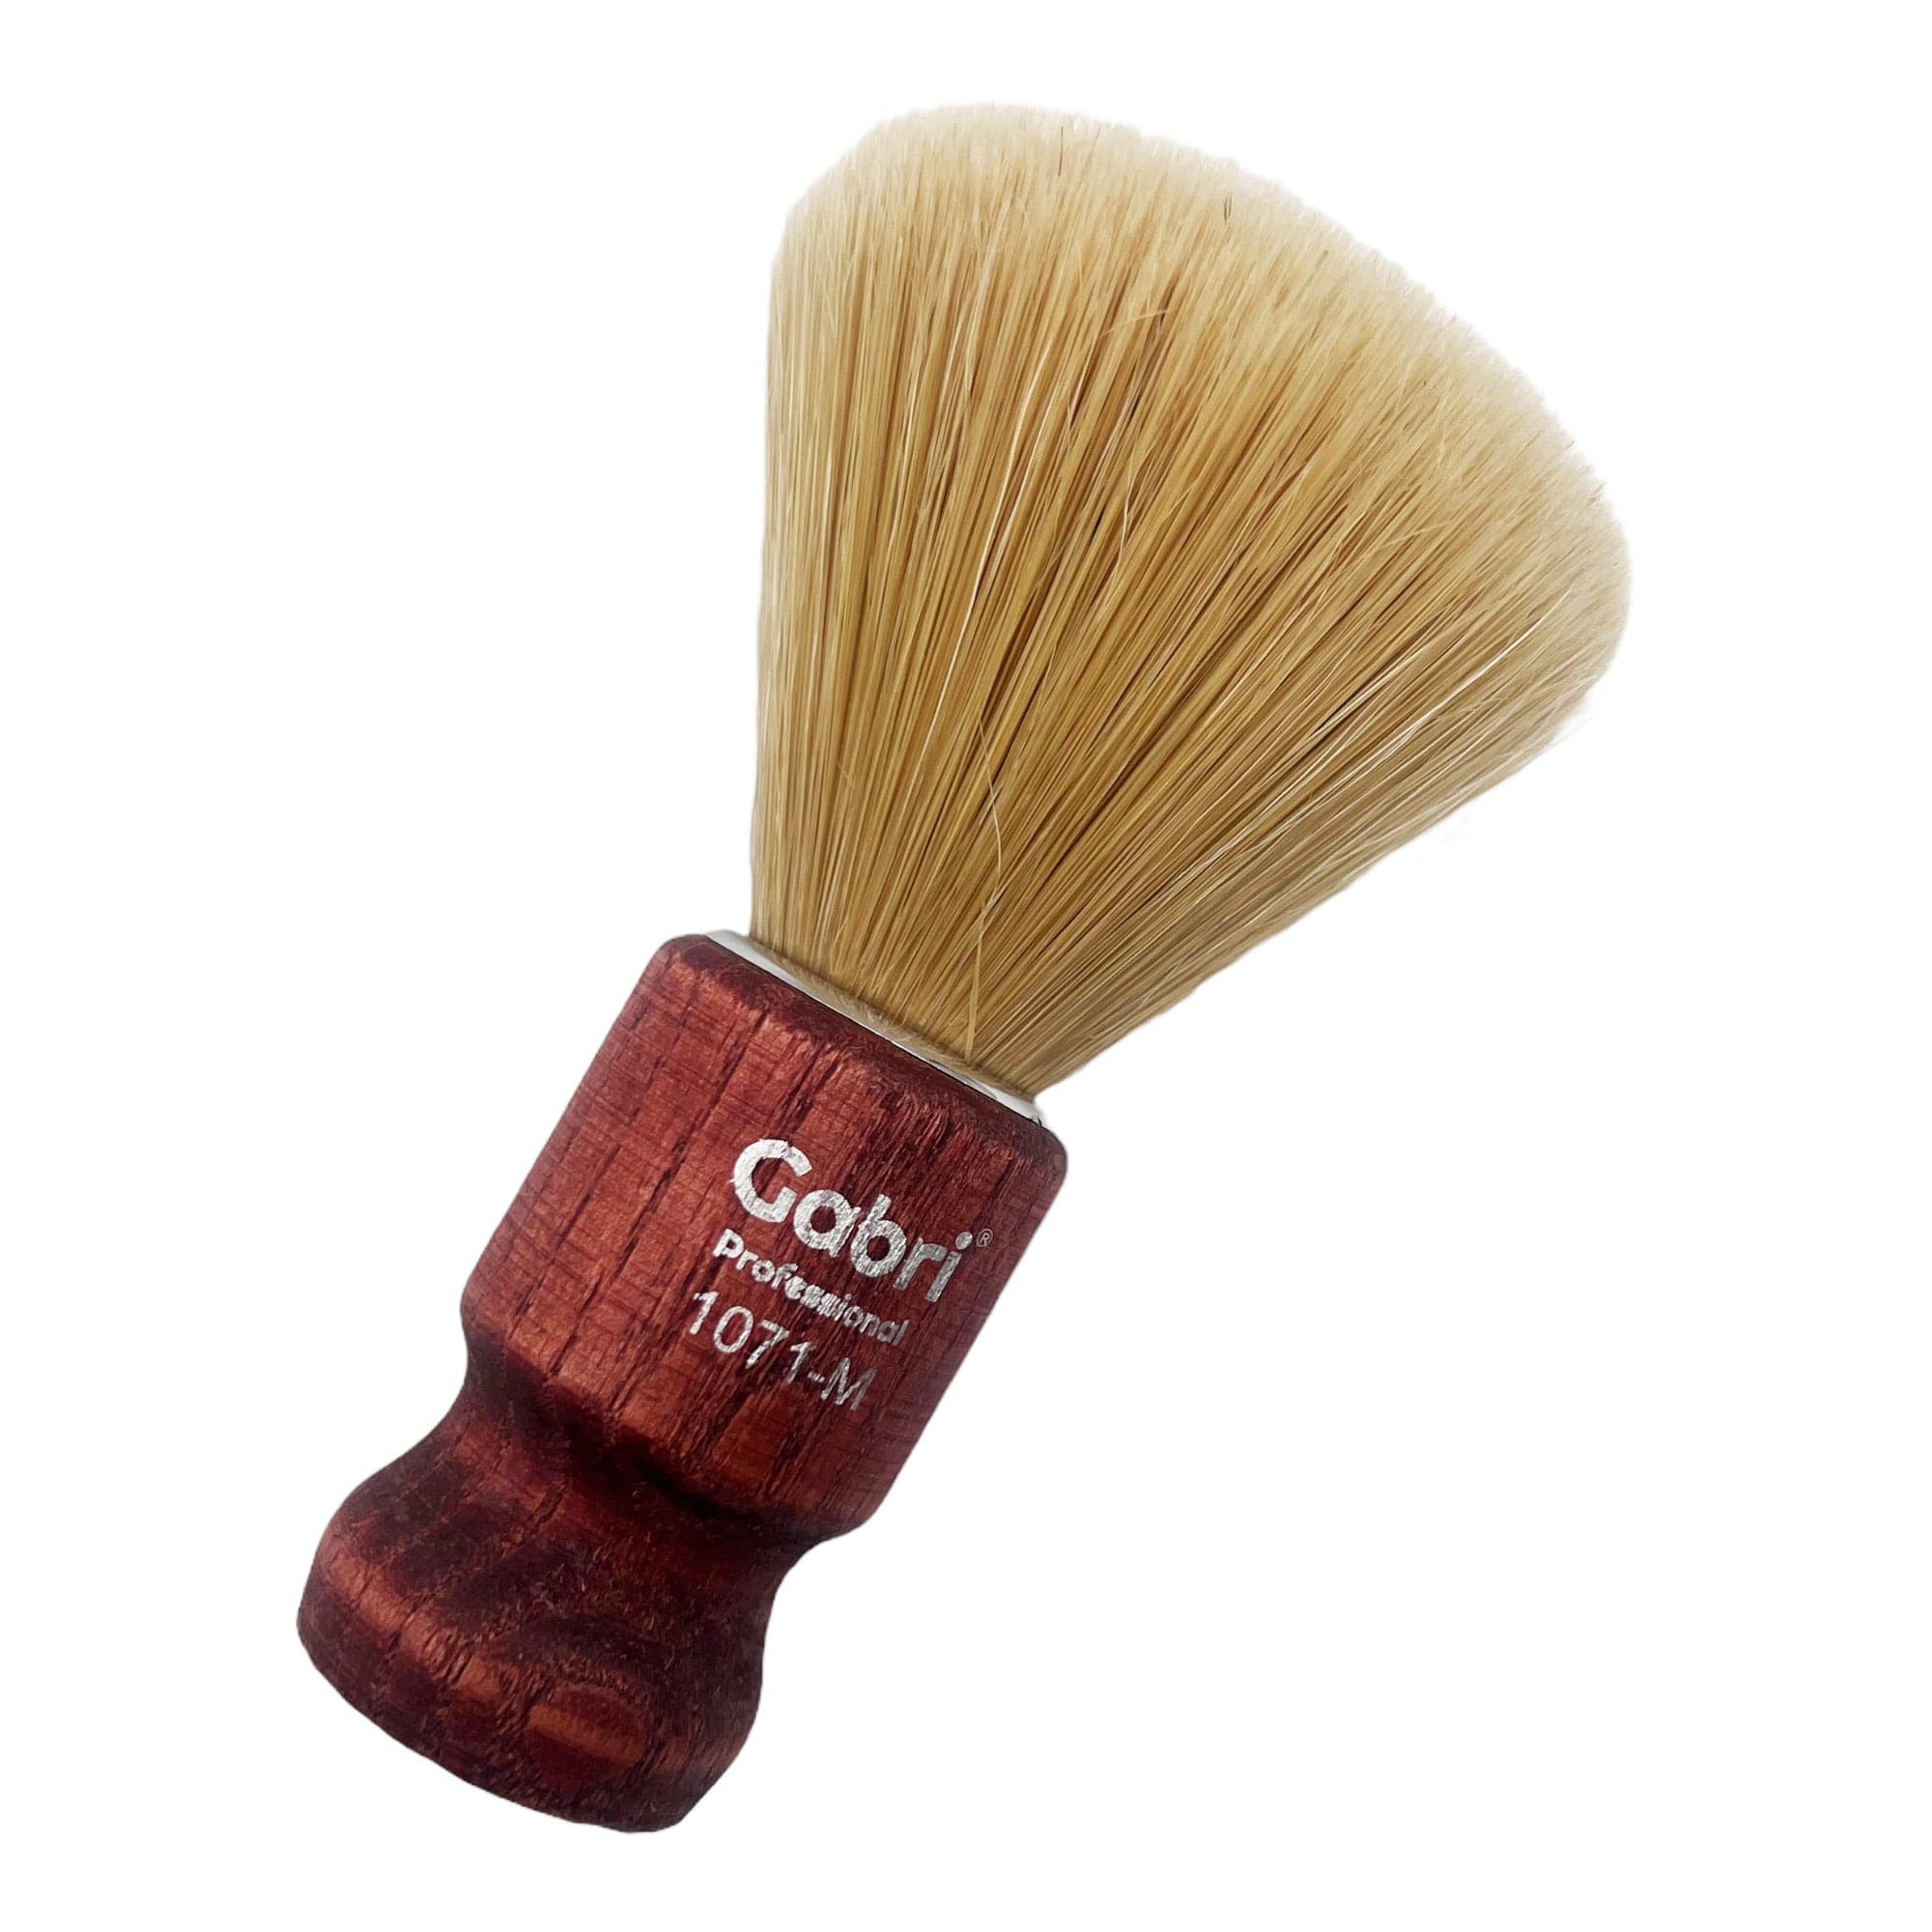 Gabri - Shaving Brush Authentic Cherry Wooden Hand Made 1071M 13.5cm